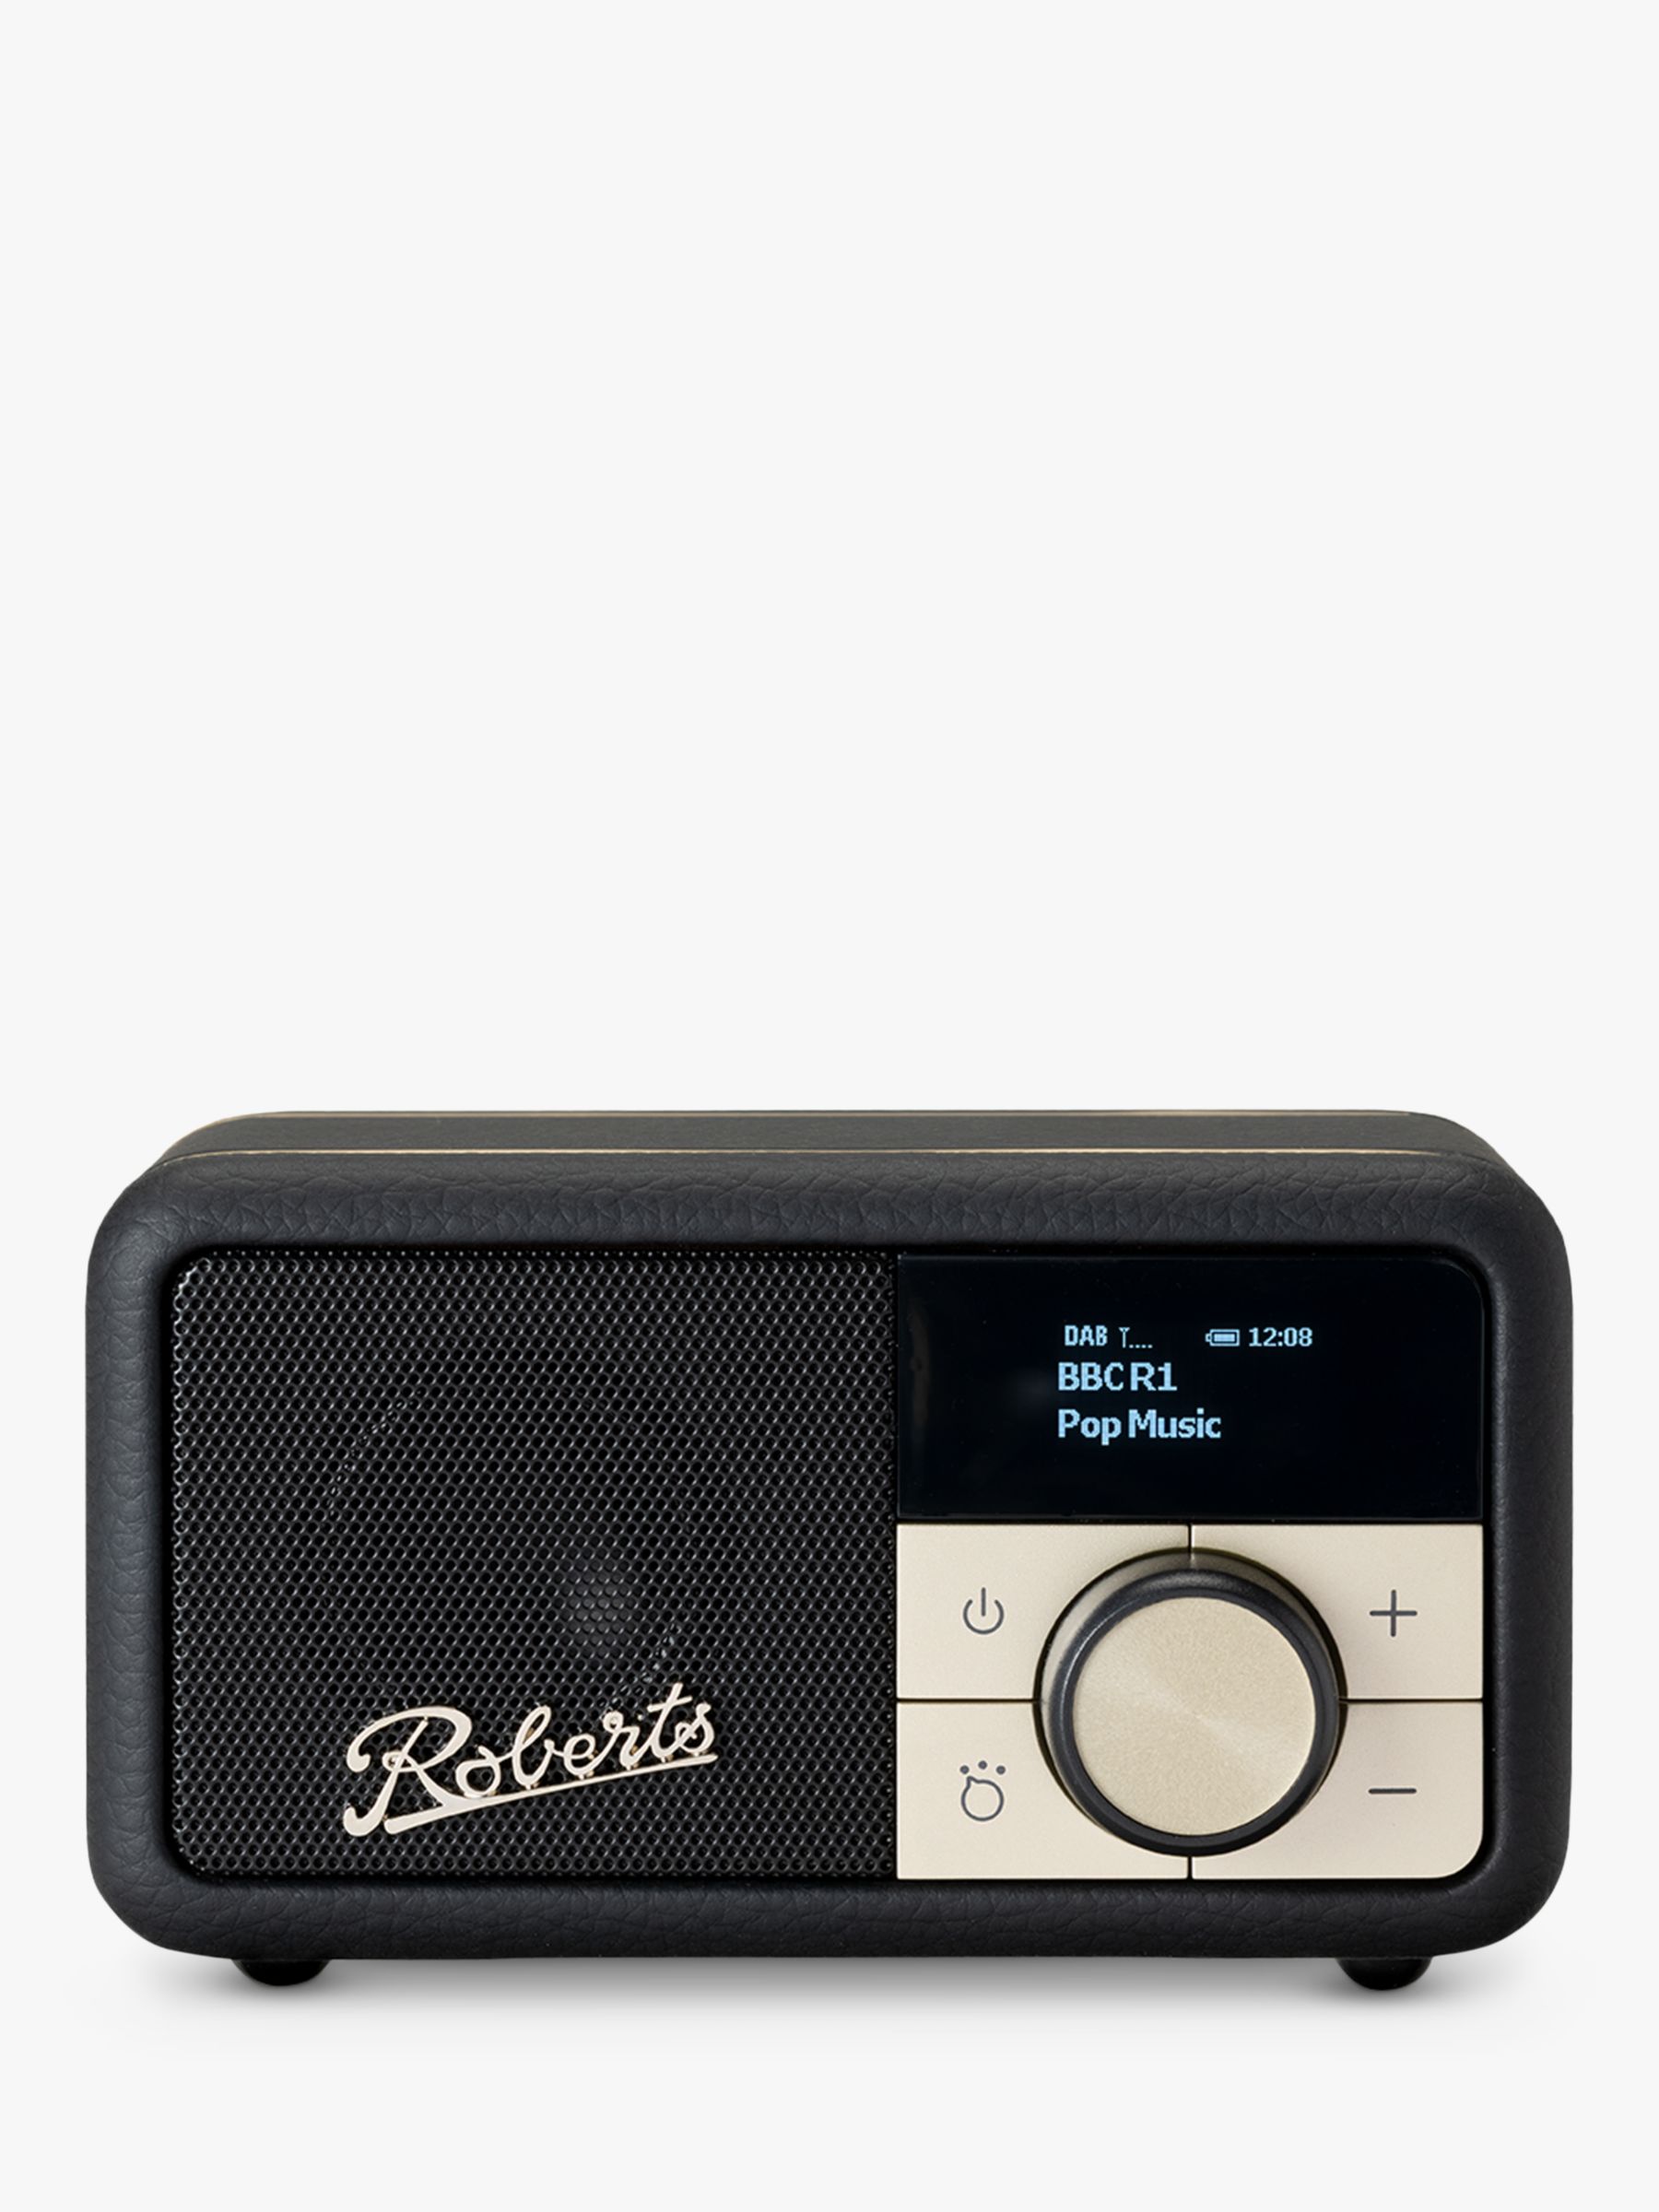 Roberts Revival Petite DAB/DAB+/FM Bluetooth Portable Digital Radio, Black